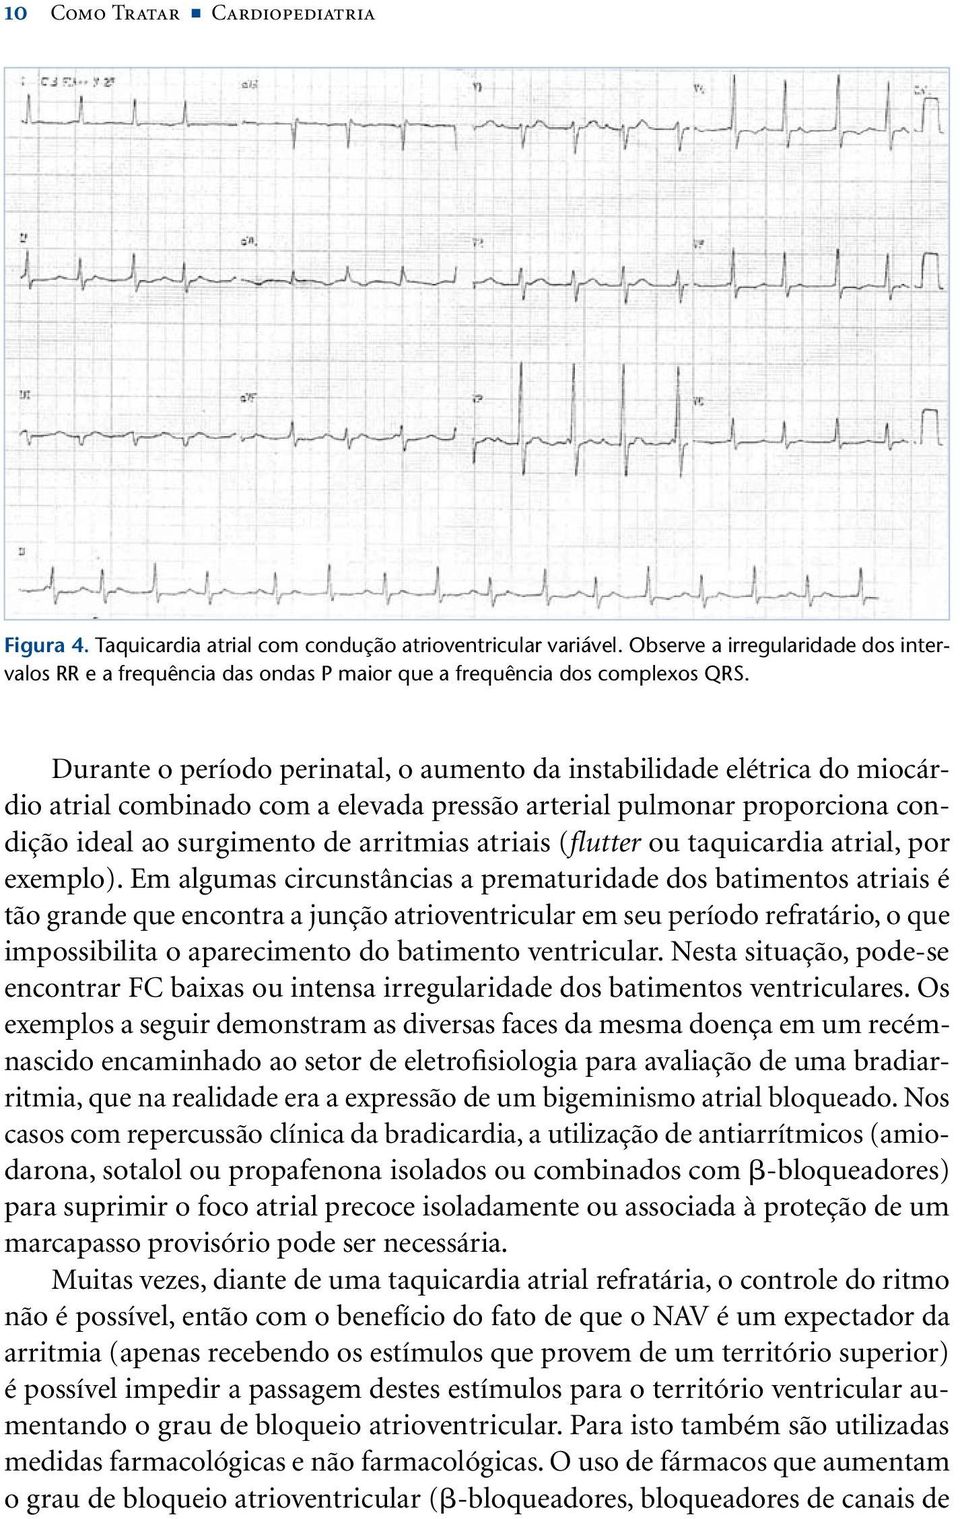 Durante o período perinatal, o aumento da instabilidade elétrica do miocárdio atrial combinado com a elevada pressão arterial pulmonar proporciona condição ideal ao surgimento de arritmias atriais